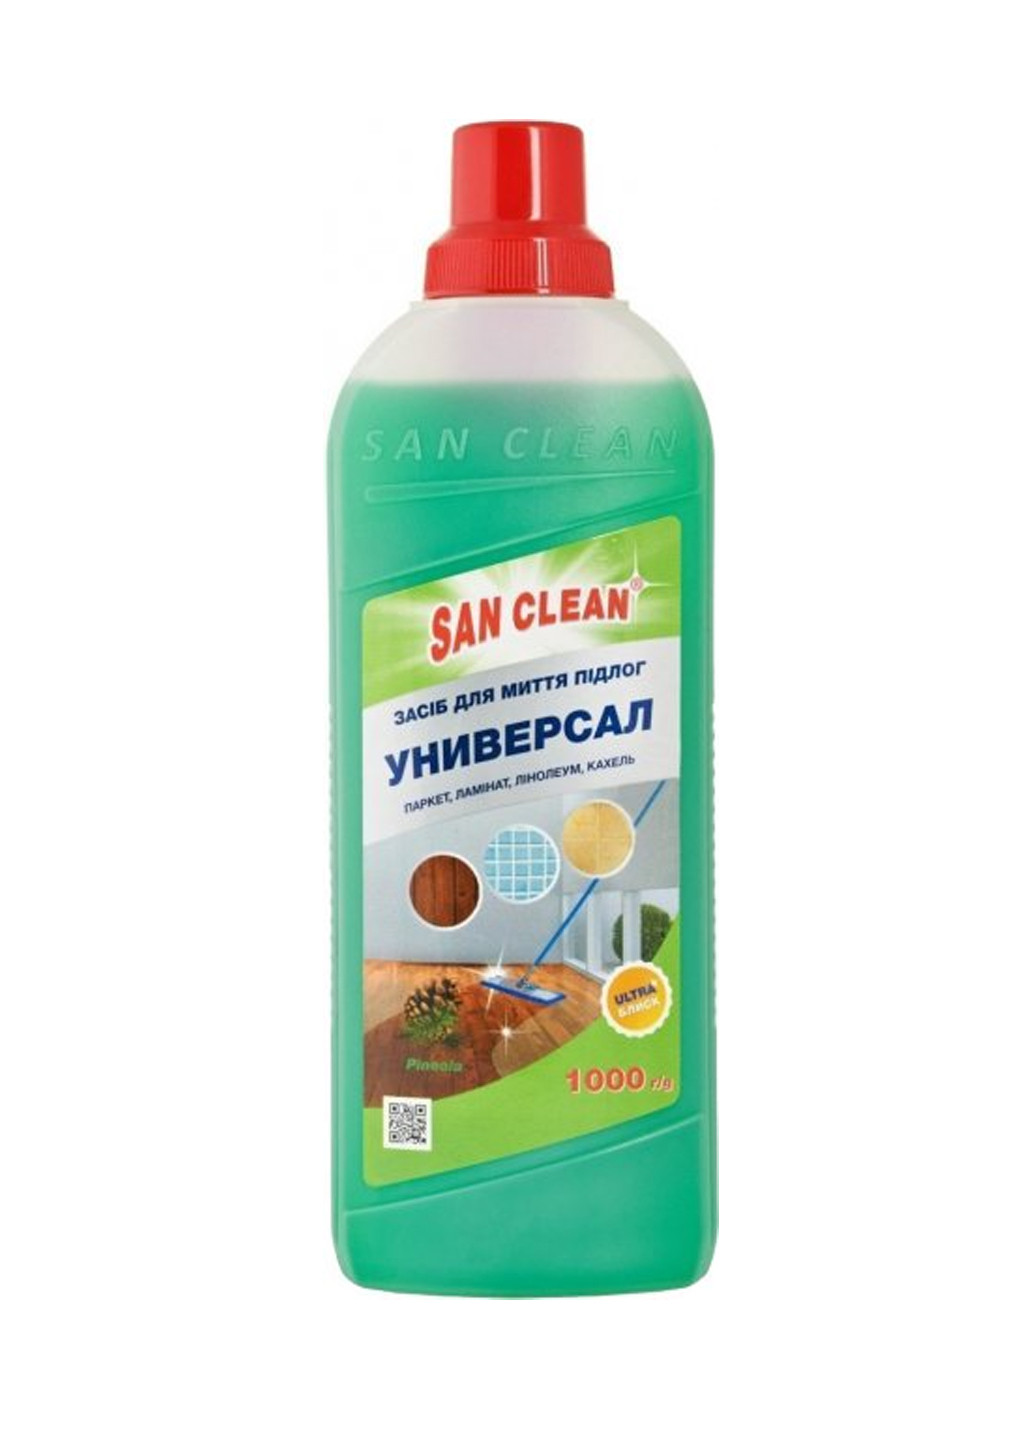 Средство чистяще-моющее "Универсал 2000" для мытья полов с ароматом хвои 1000 г San Clean 4820003543818 (259967257)